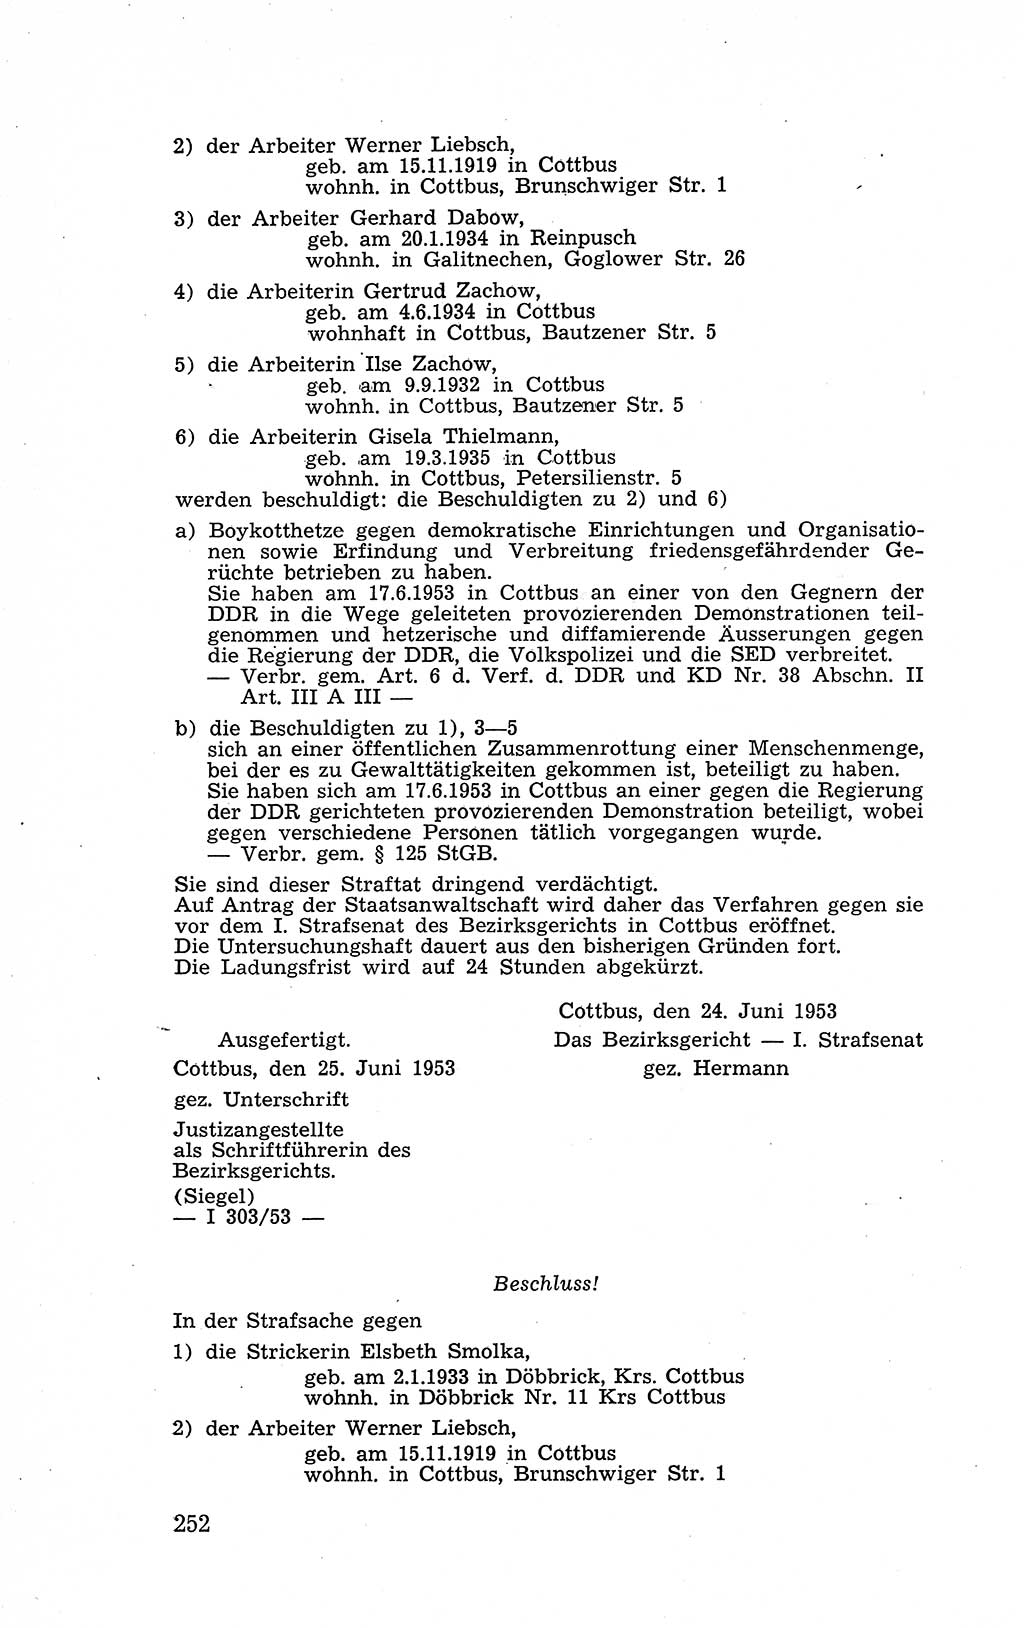 Recht in Fesseln, Dokumente, Internationale Juristen-Kommission [Bundesrepublik Deutschland (BRD)] 1955, Seite 252 (R. Dok. IJK BRD 1955, S. 252)